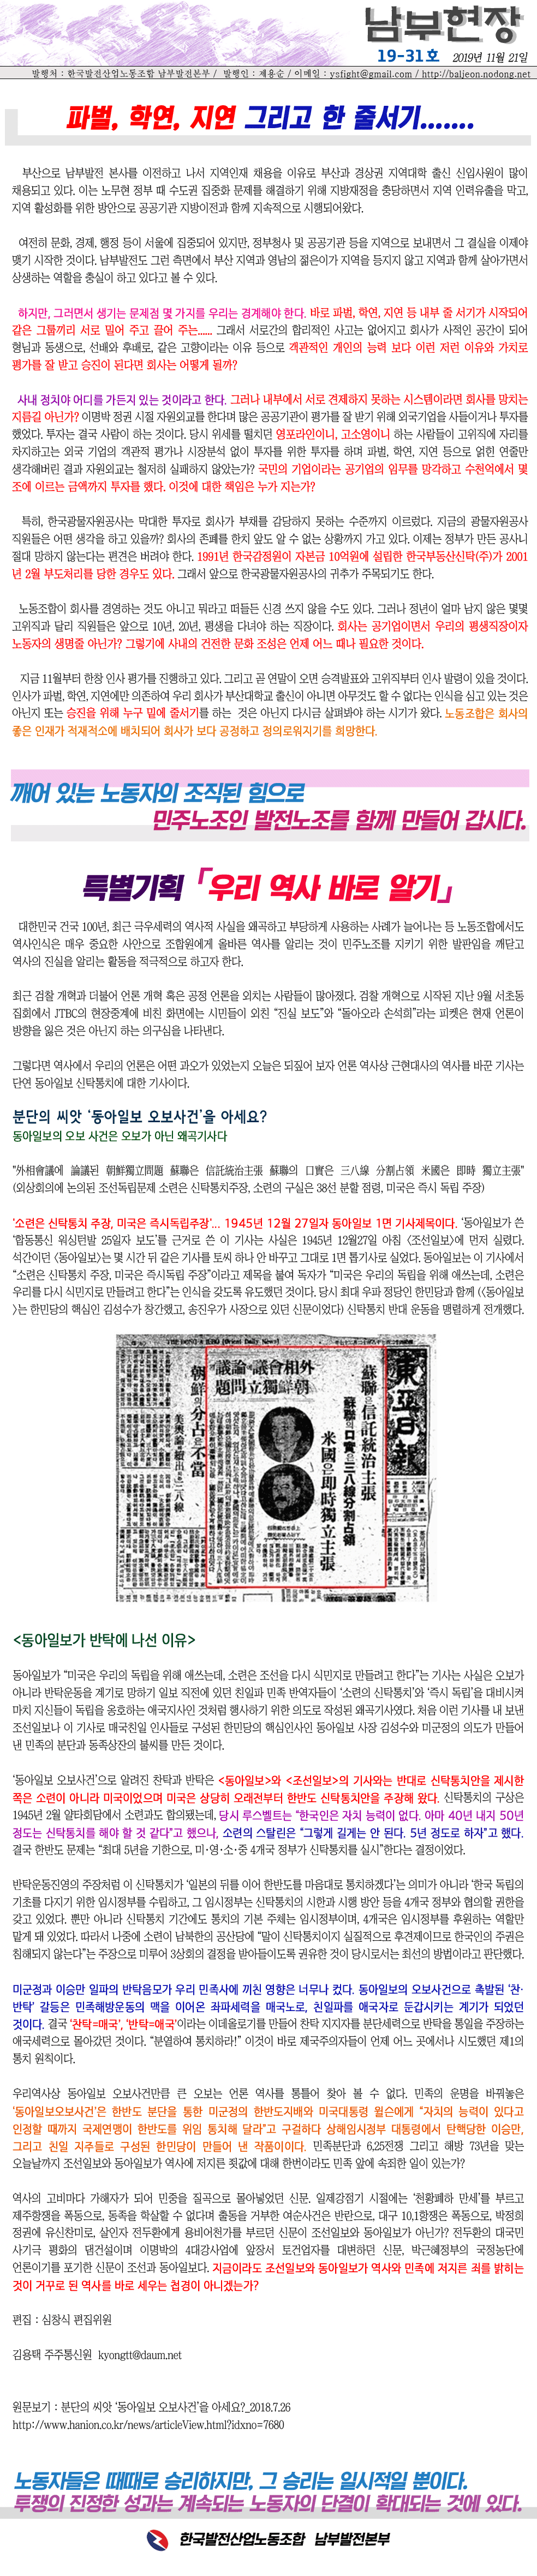 남부현장 제19-31호 한줄서기(20191121).gif